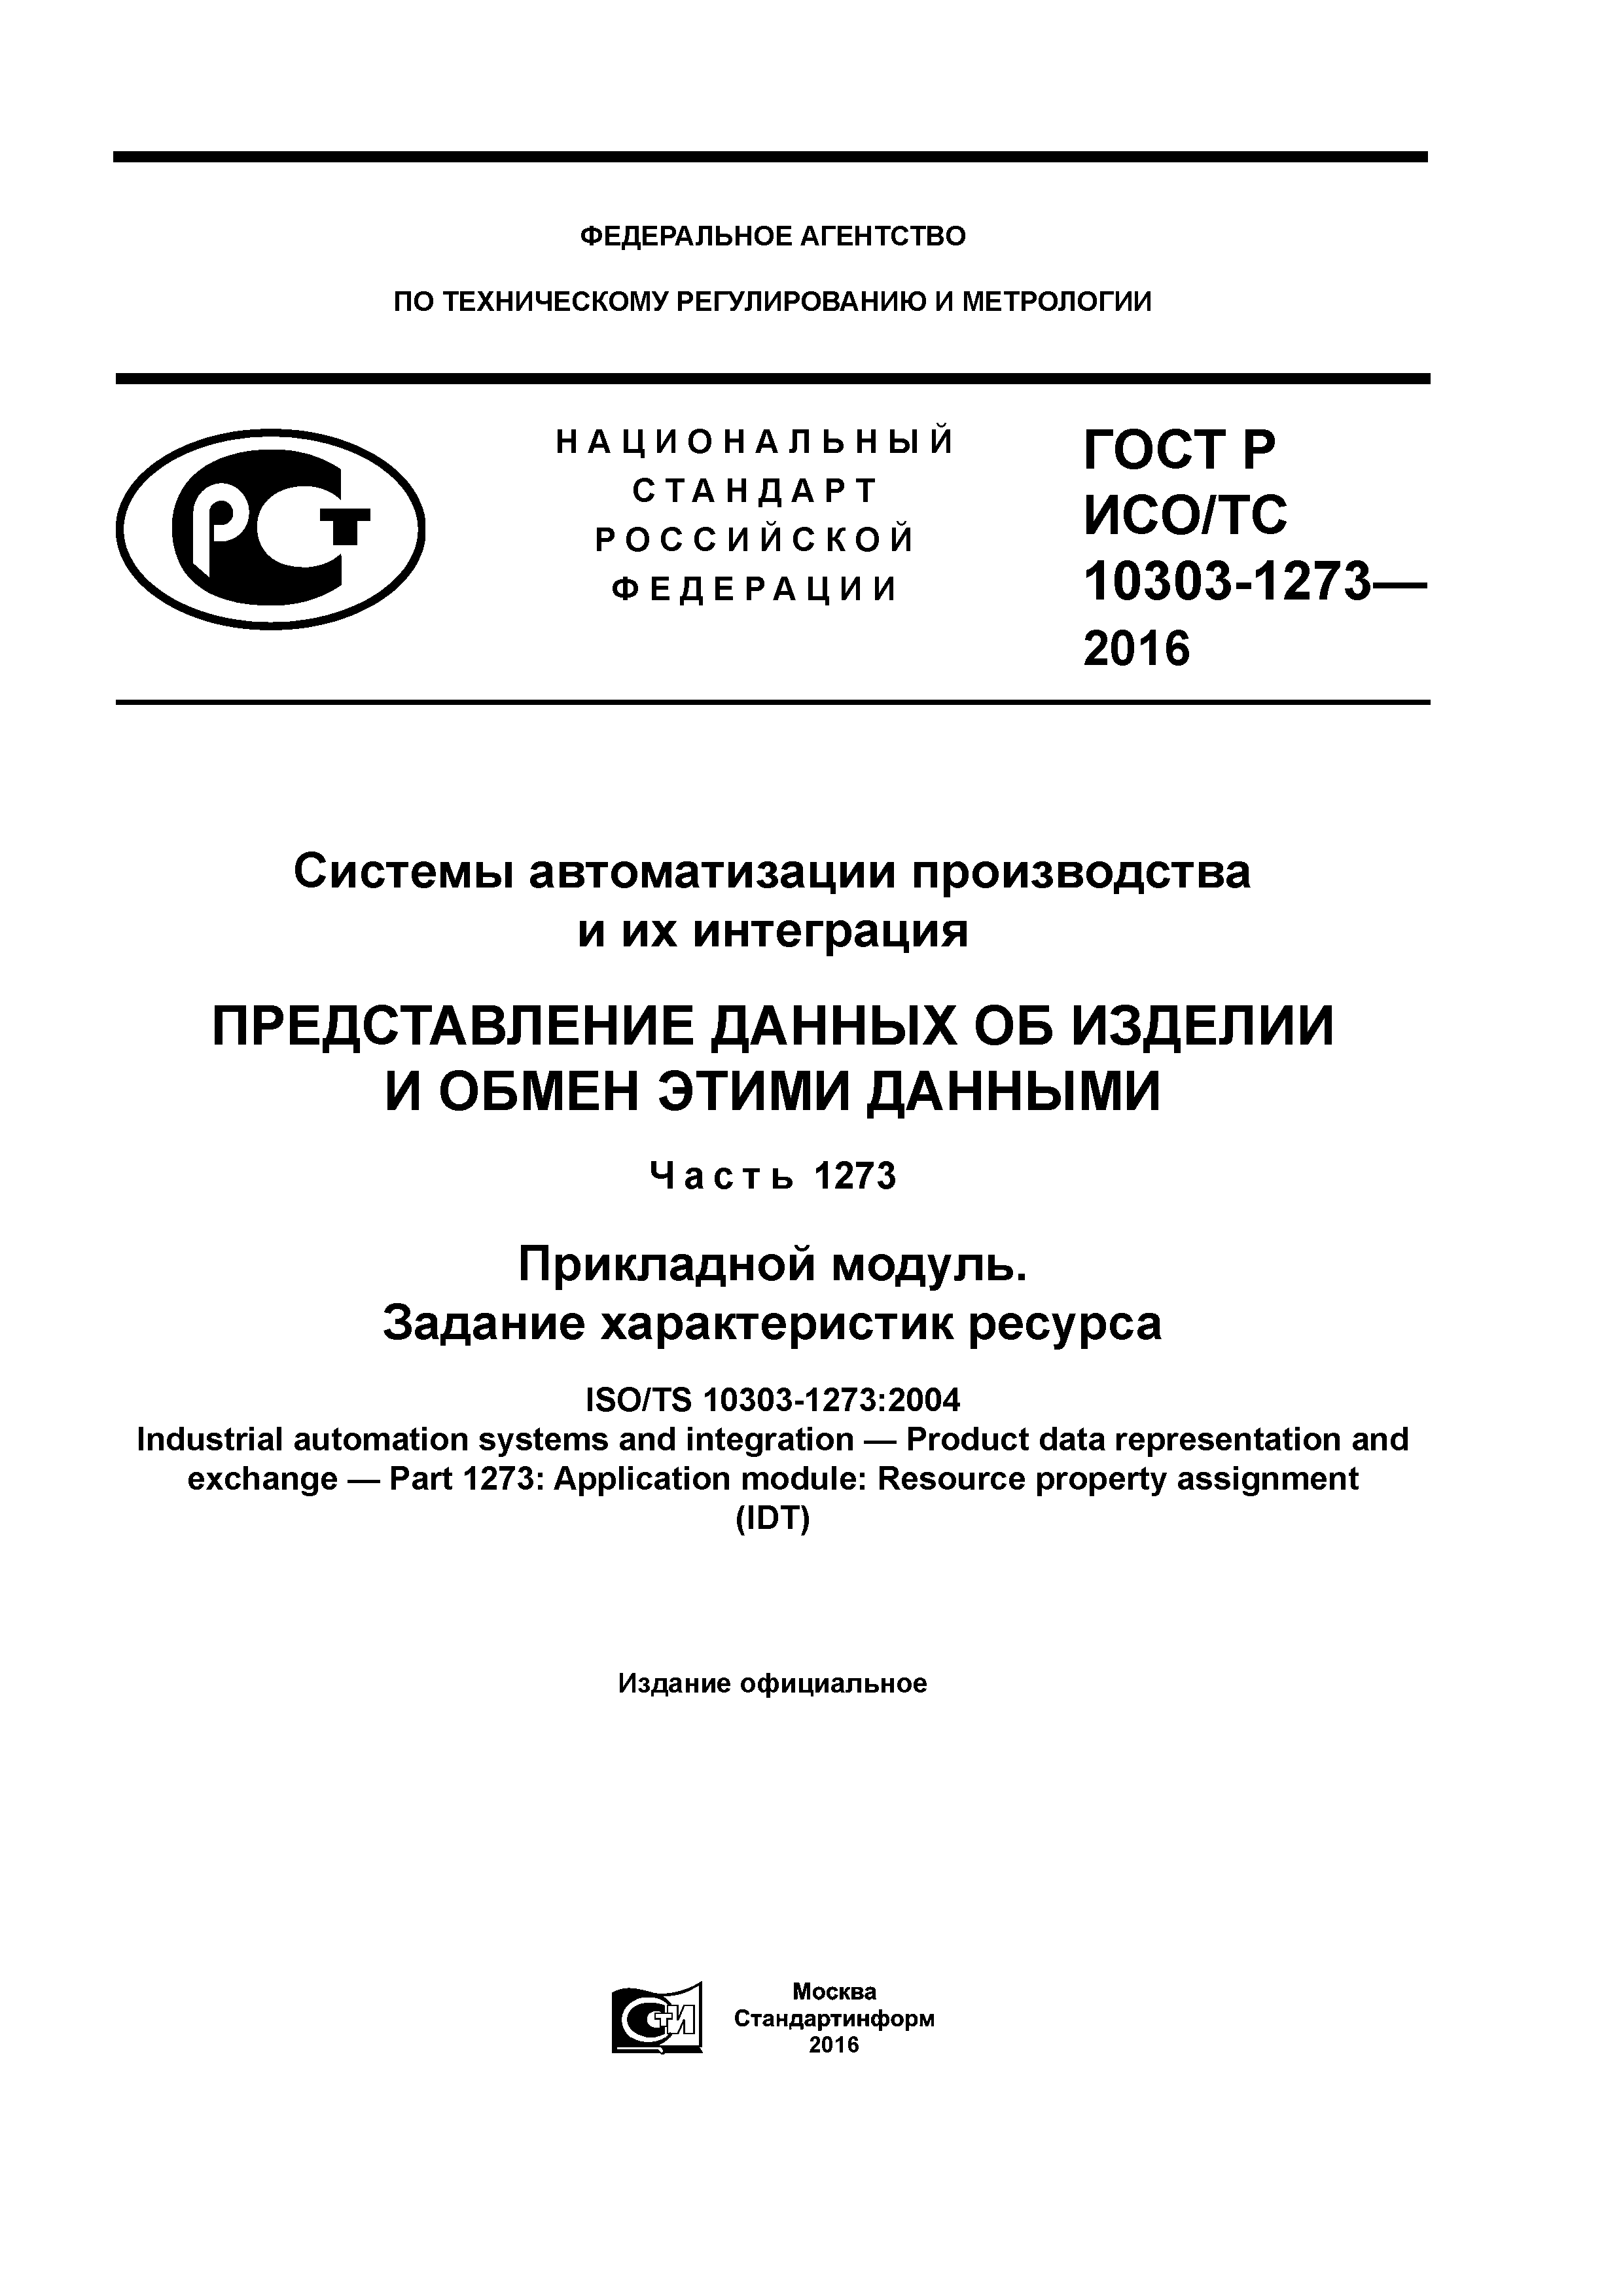 ГОСТ Р ИСО/ТС 10303-1273-2016